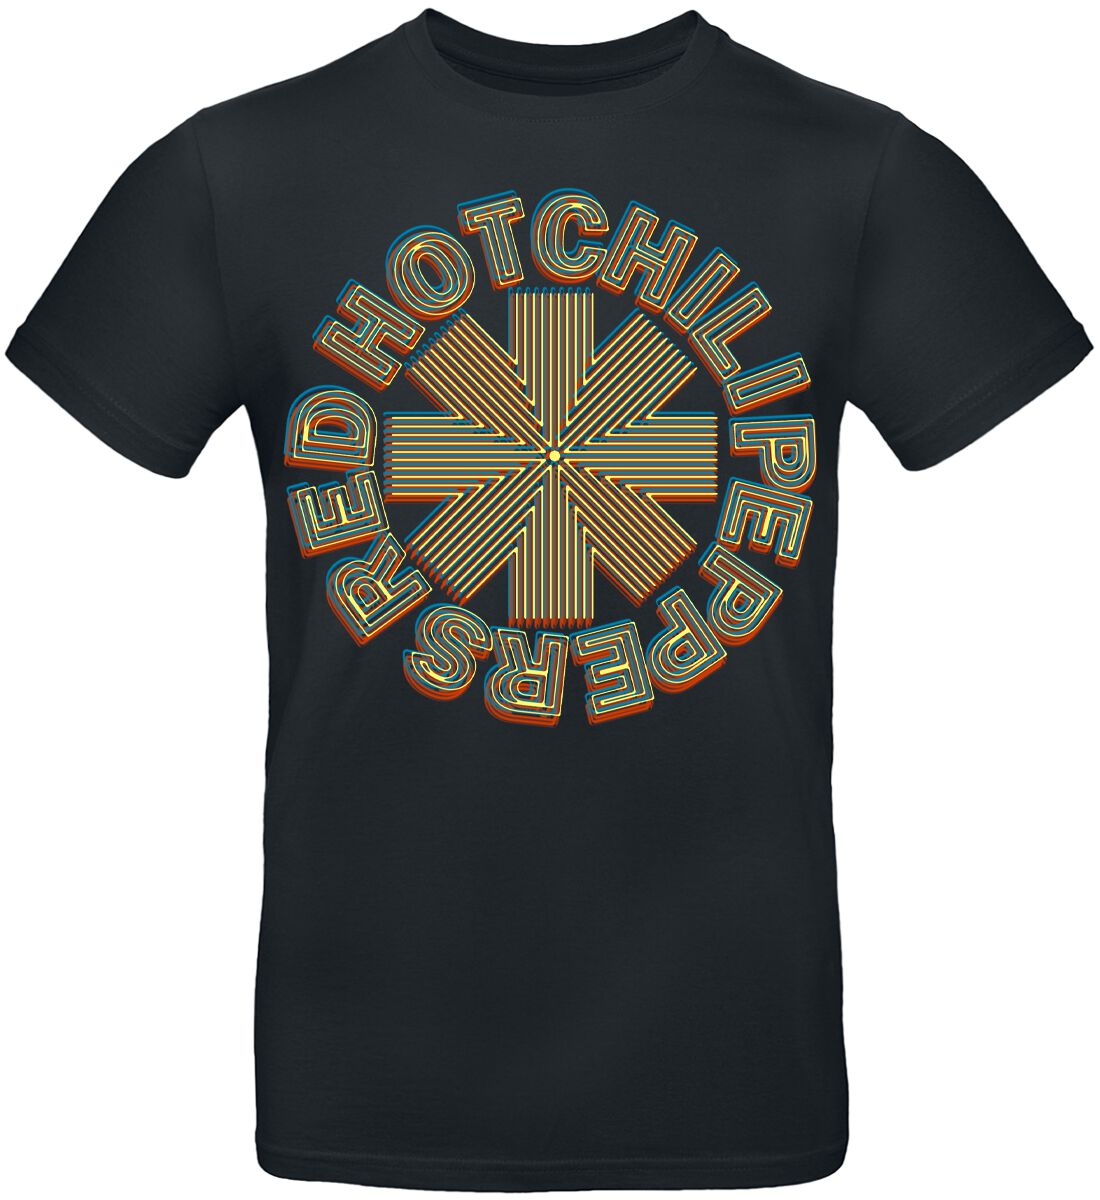 Red Hot Chili Peppers T-Shirt - Abstract Logo - S bis 3XL - für Männer - Größe S - schwarz  - Lizenziertes Merchandise!